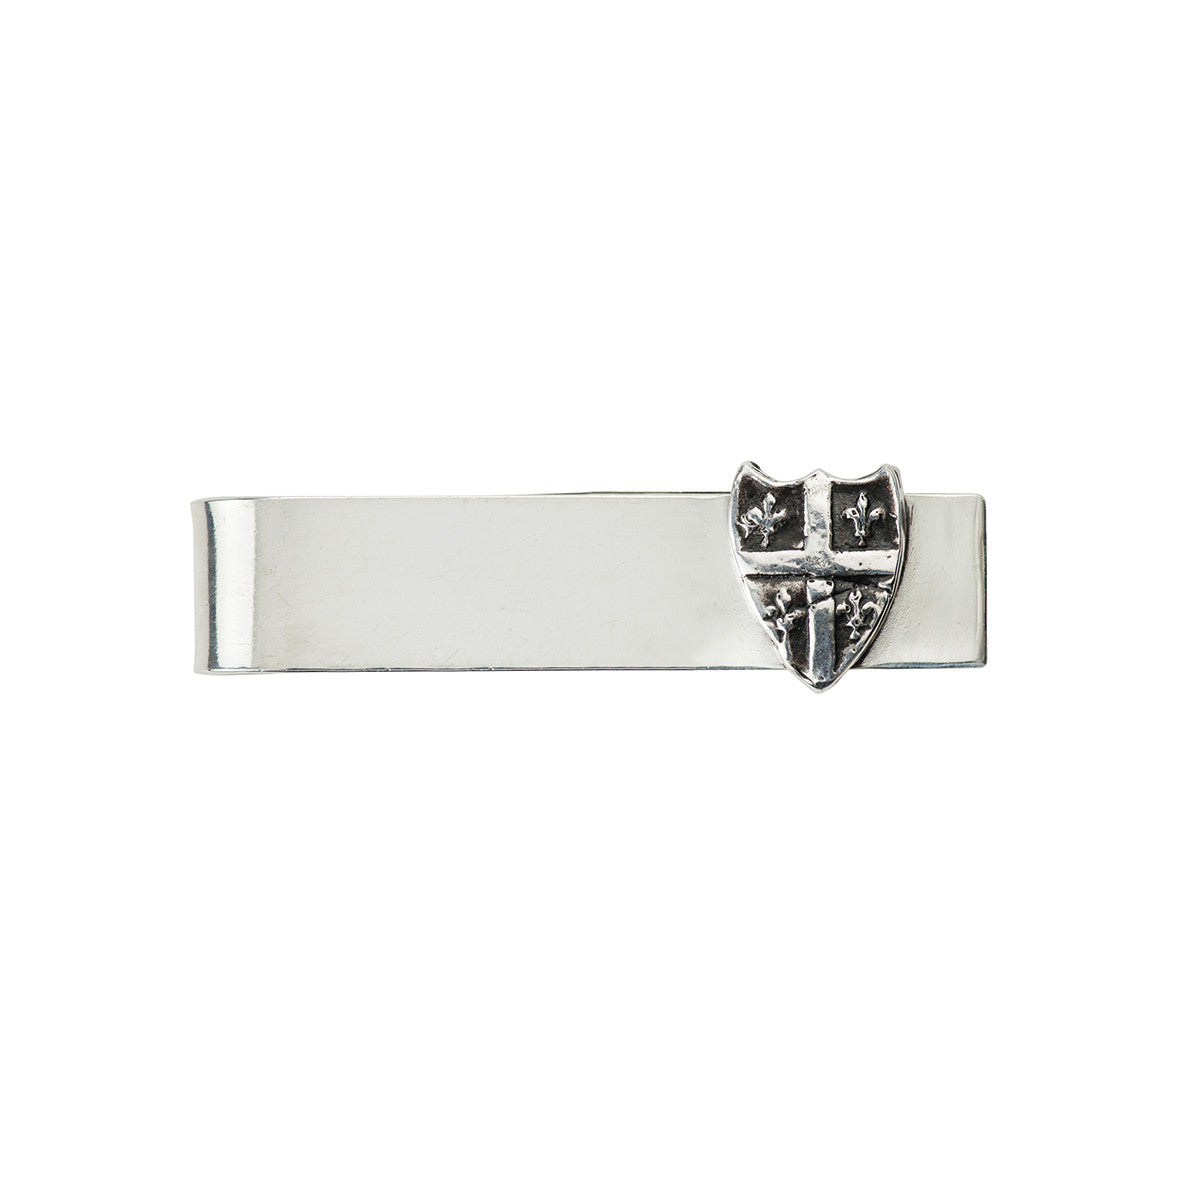 A sterling silver tie bar featuring our Fleur de Lys symbol talisman.